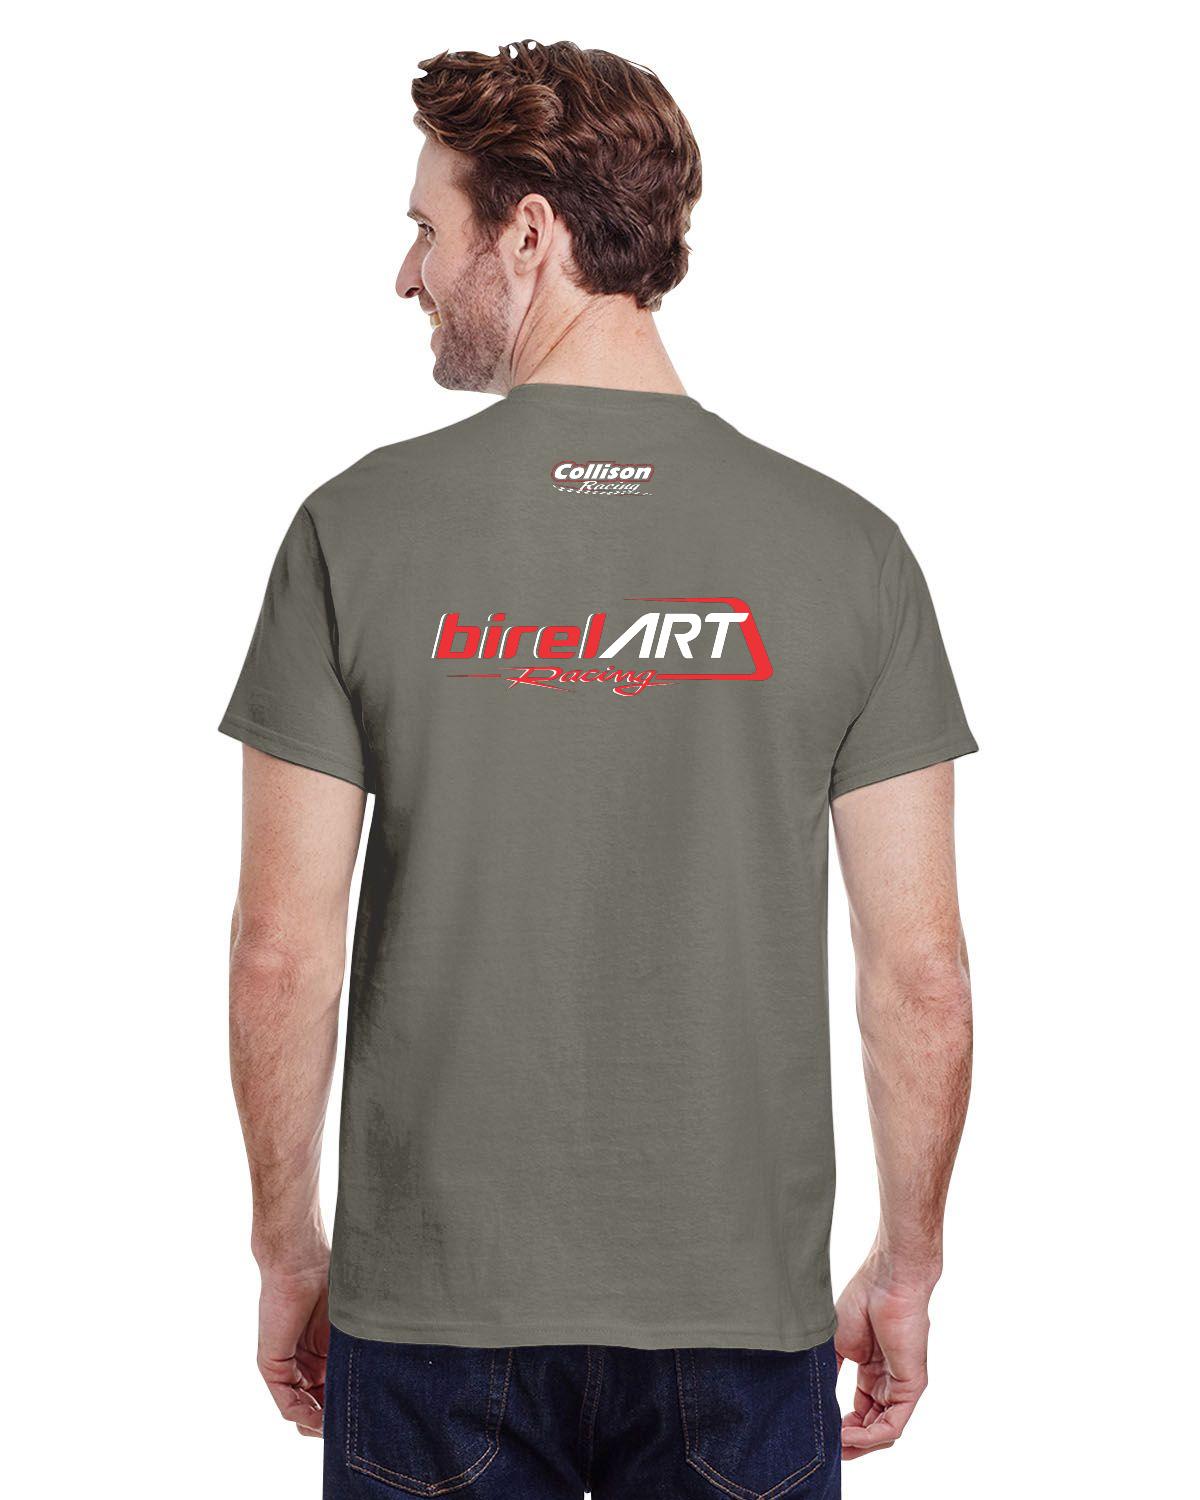 Birel Art Racing Adult T-Shirt (Dark)